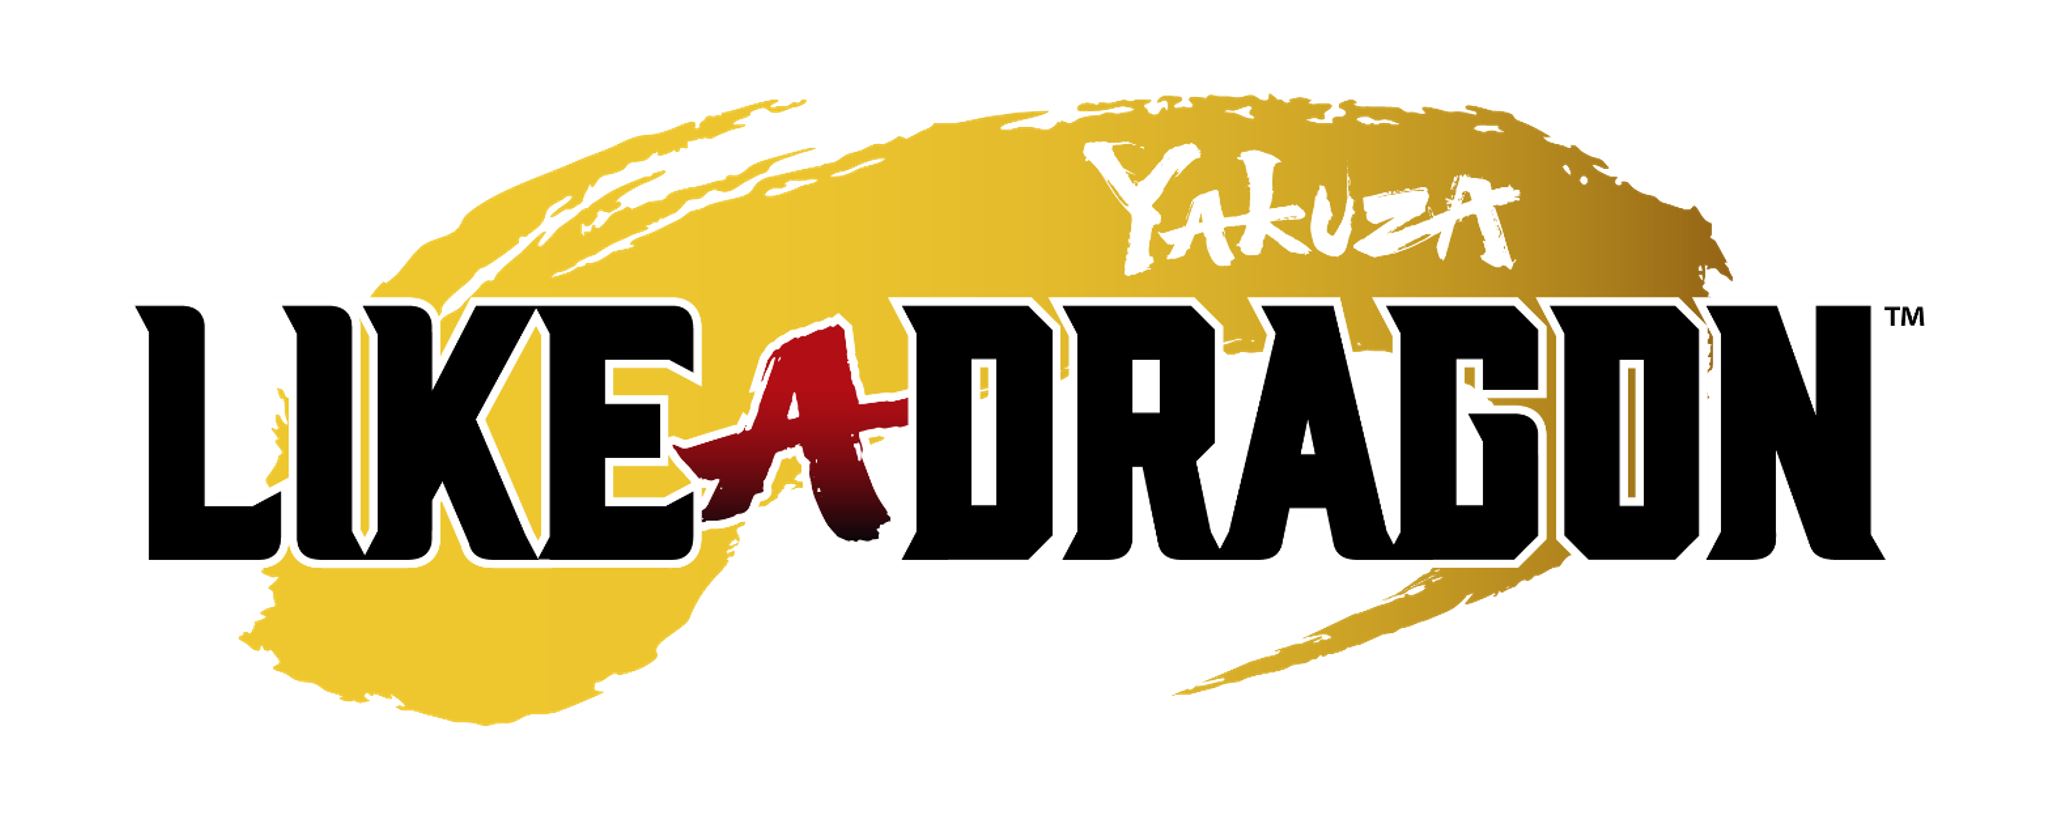 yakuza like a dragon